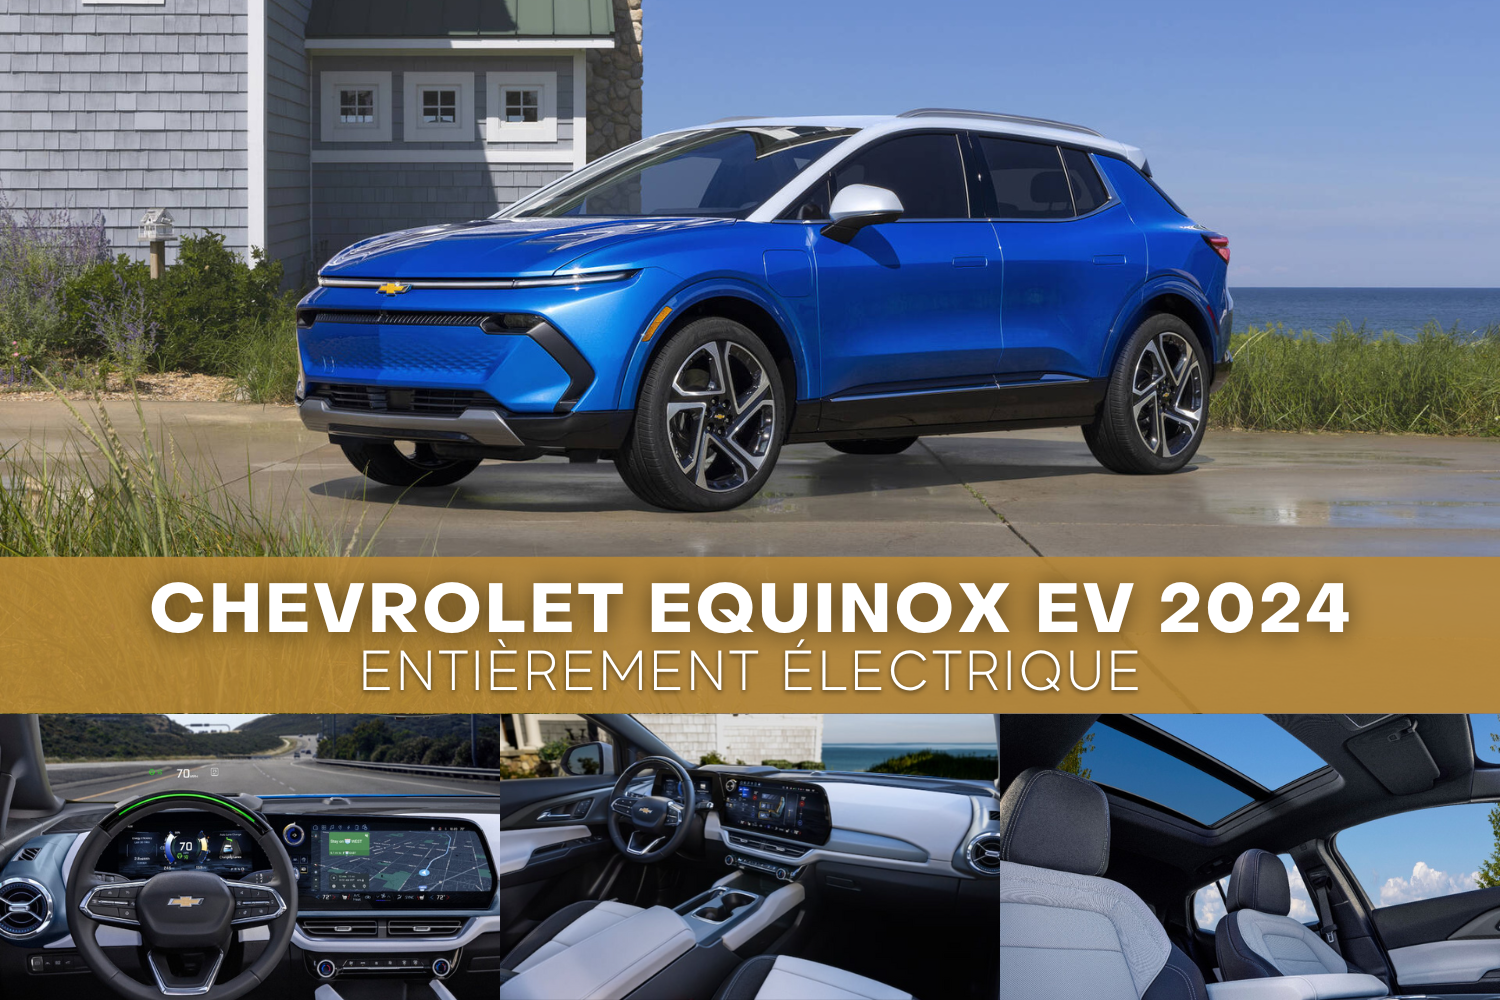 Chevrolet Equinox EV 2024 entièrement électrique